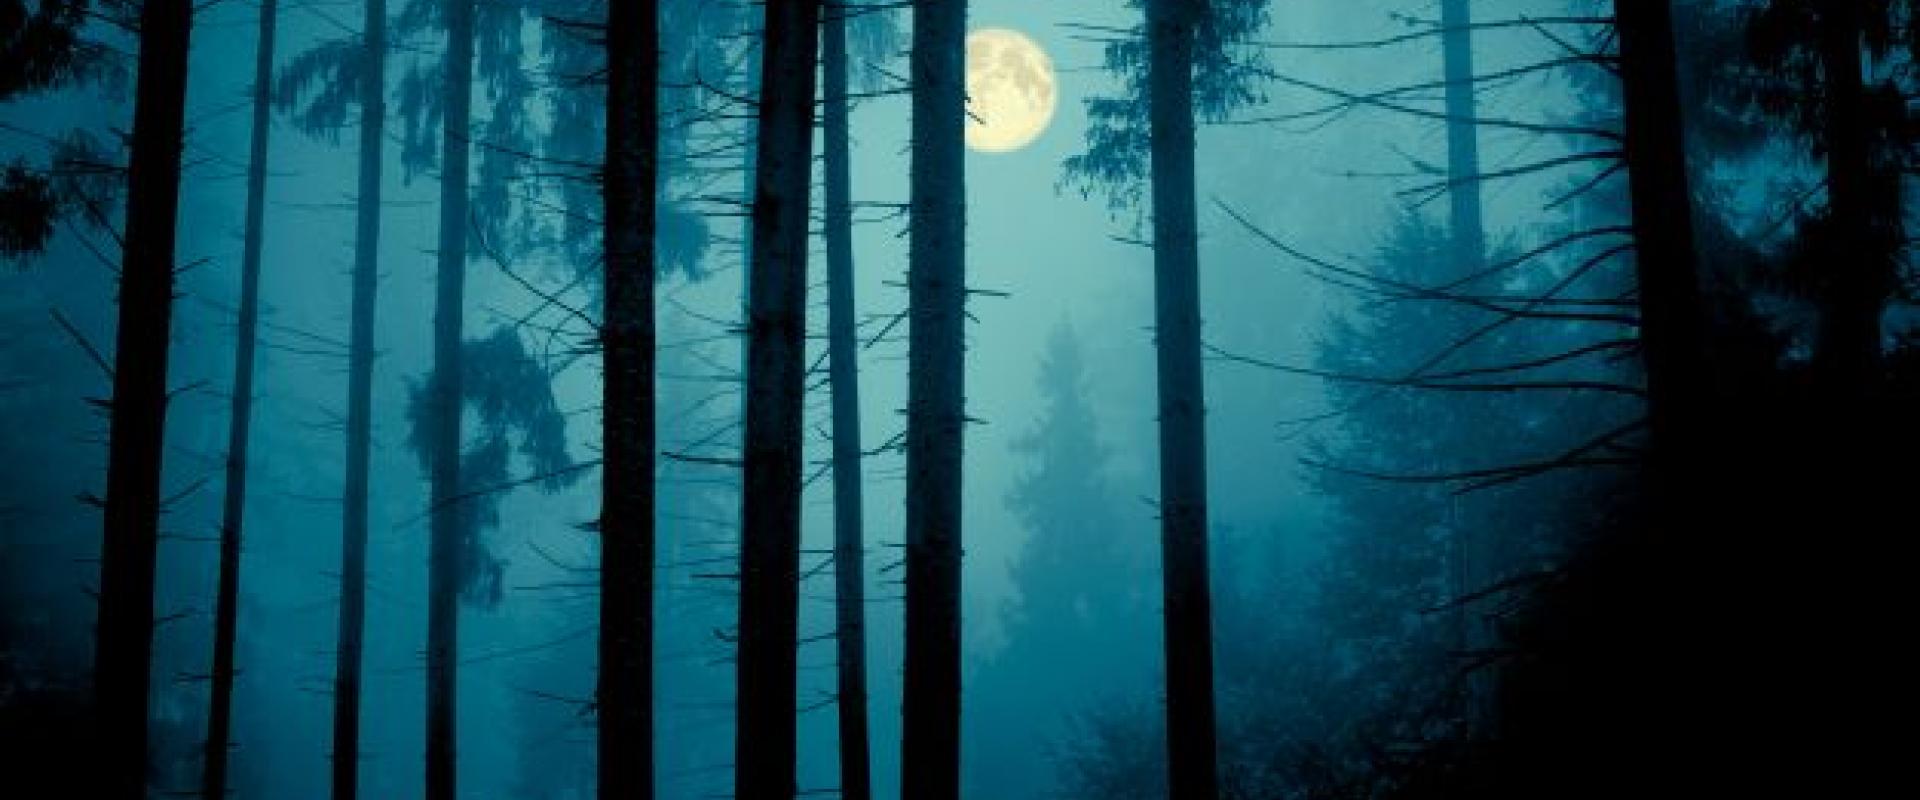 coedwig dywyll gyda lleuad y tu ôl / dark forest with moon behind